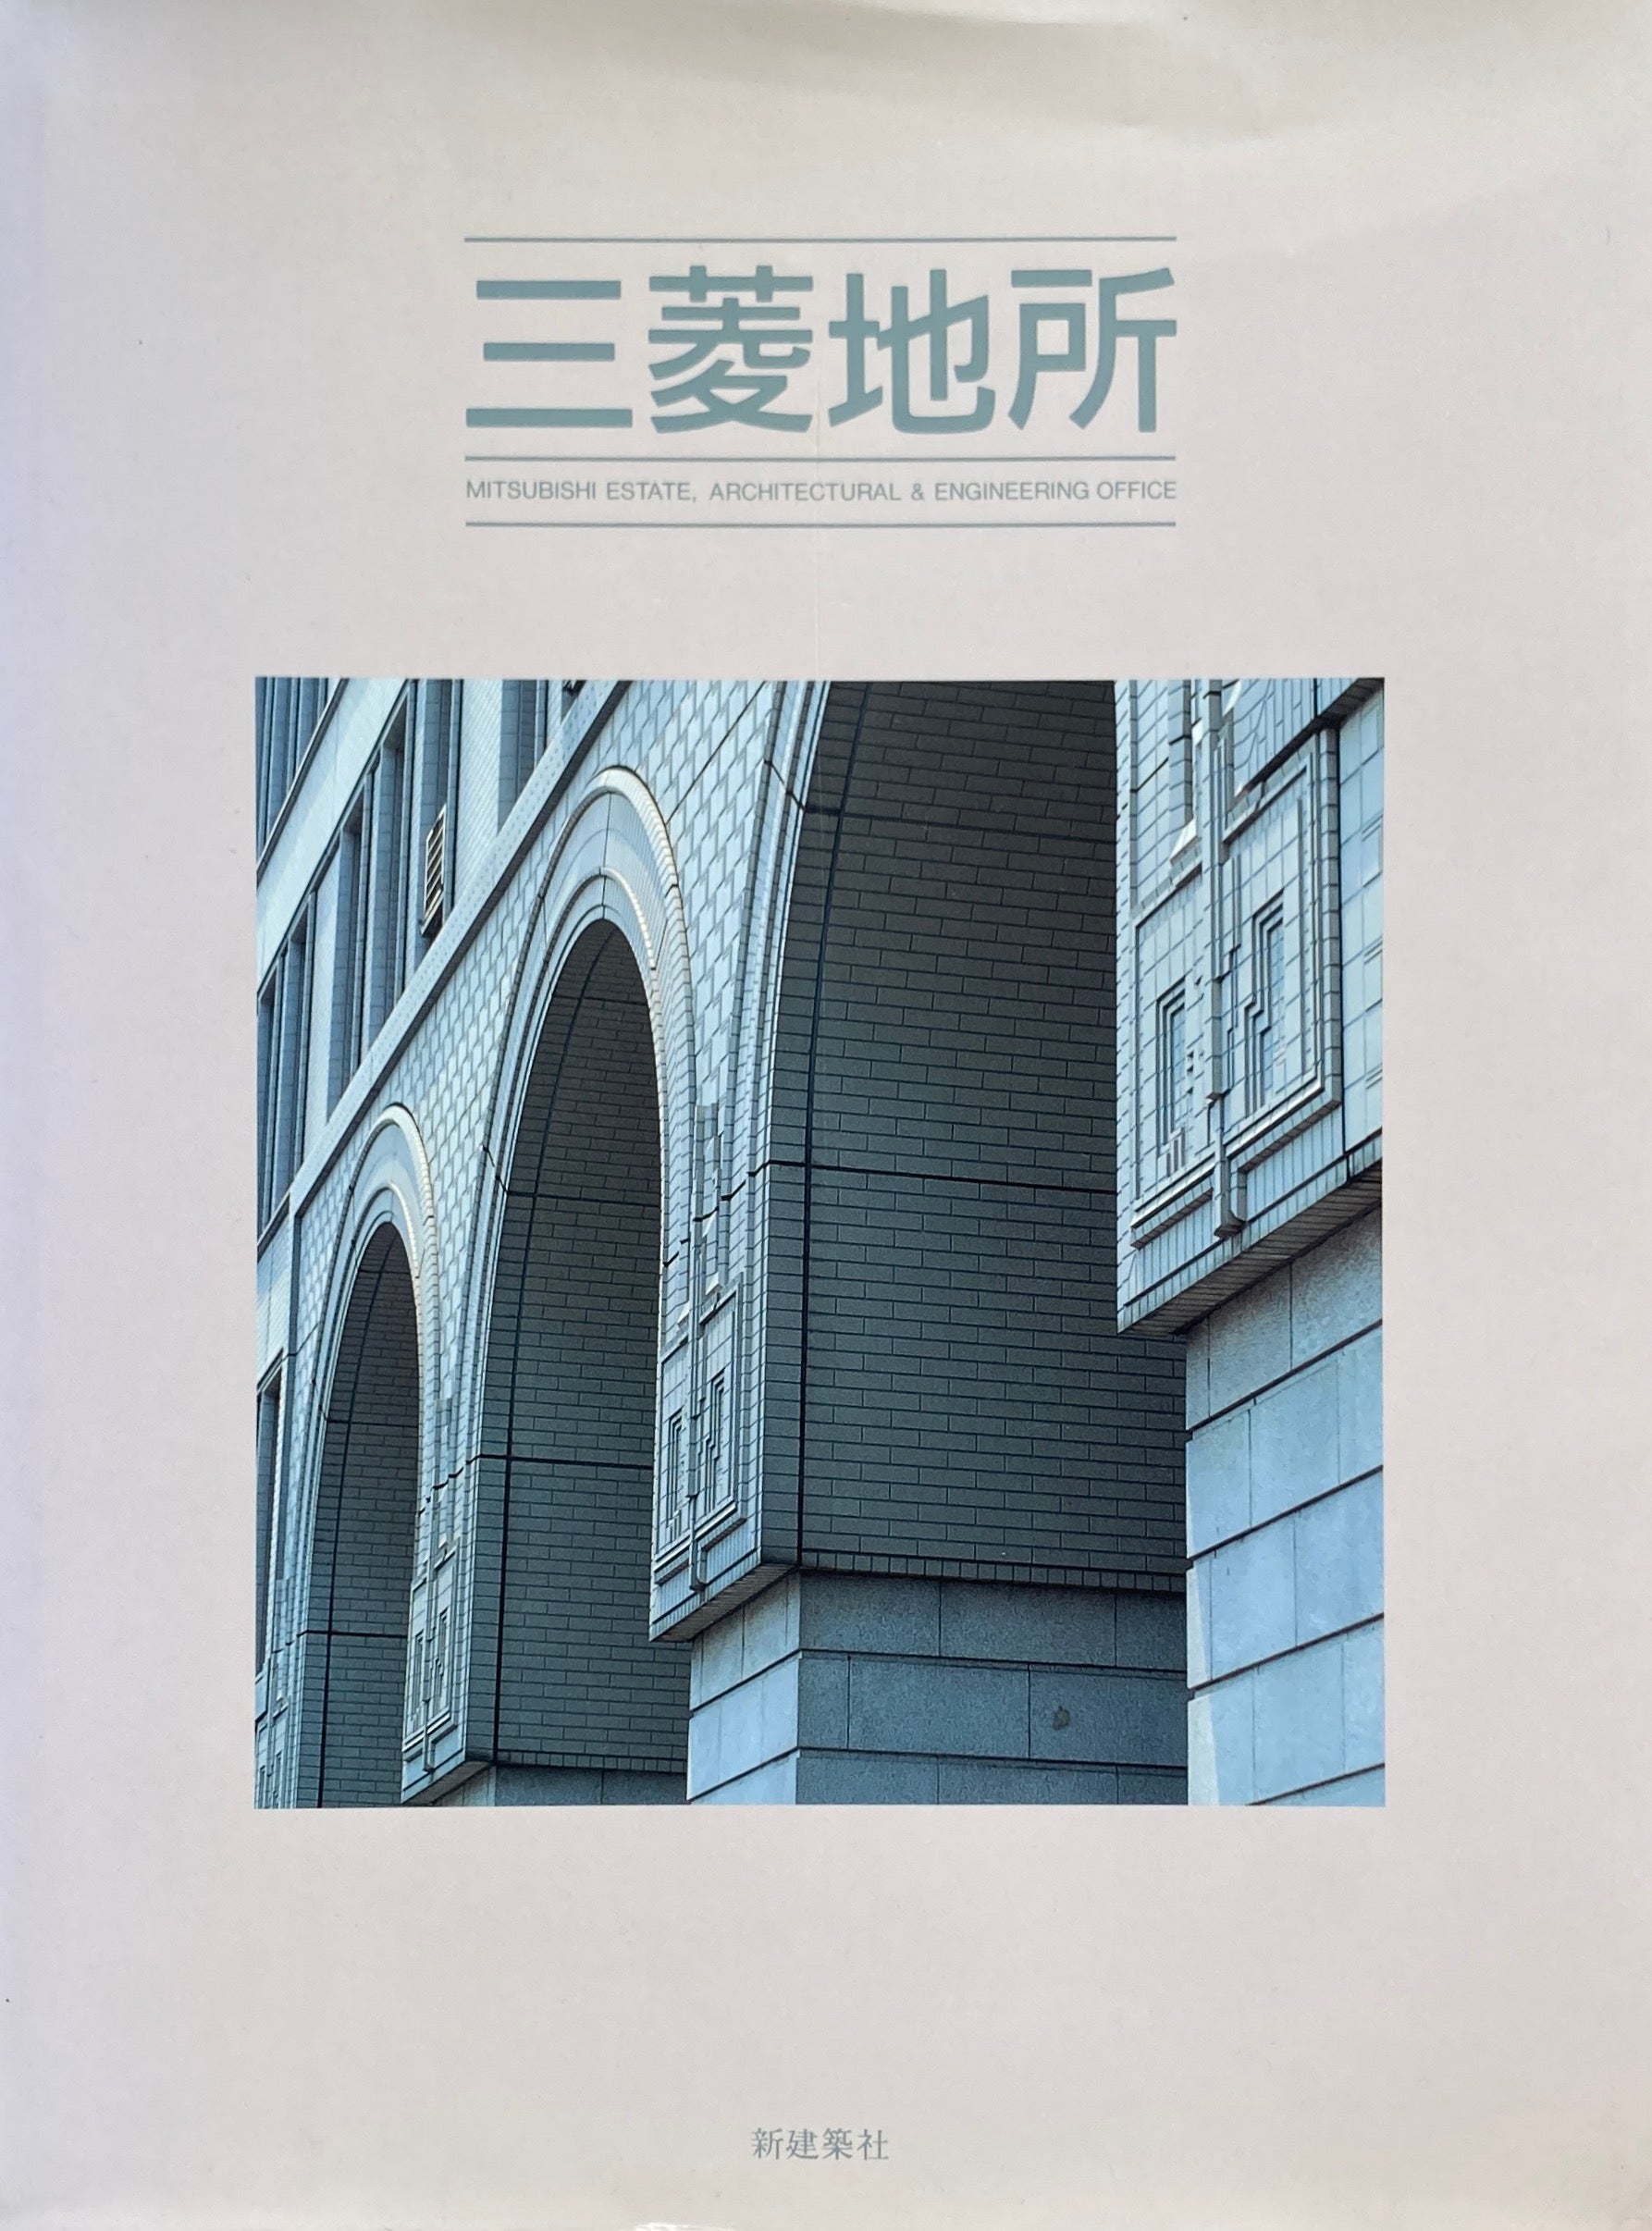 10506/渡邊洋治建築作品集 渡辺洋治 1985年 初版 渡辺洋治建築作品集 